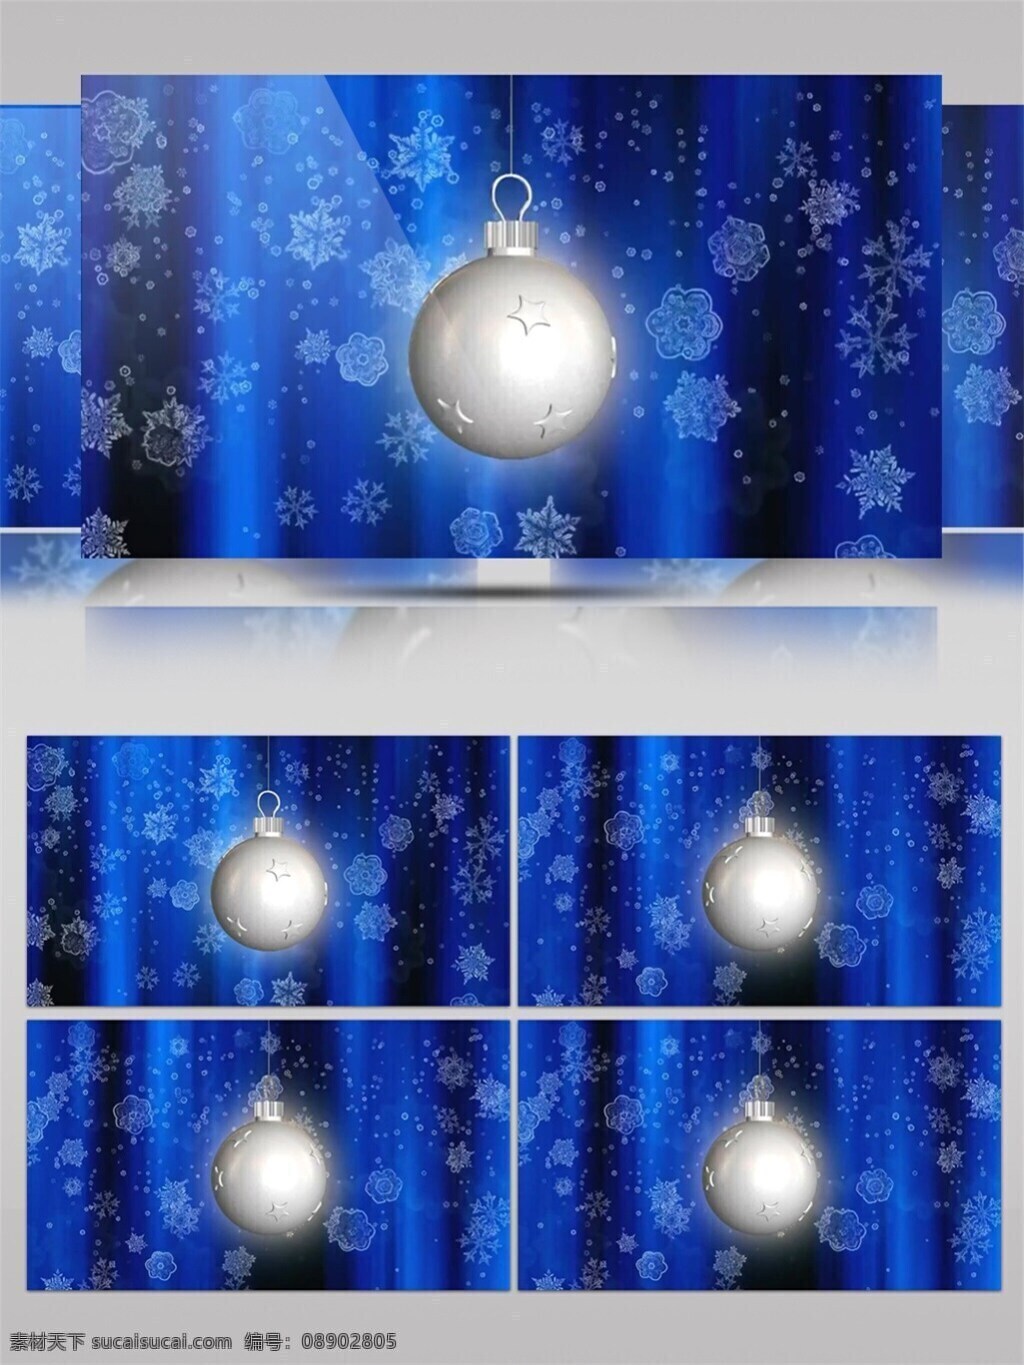 白色 圣诞 圣诞节 视频 白色球体 高质量 背景 节日背景 蓝色背景 美景动态背景